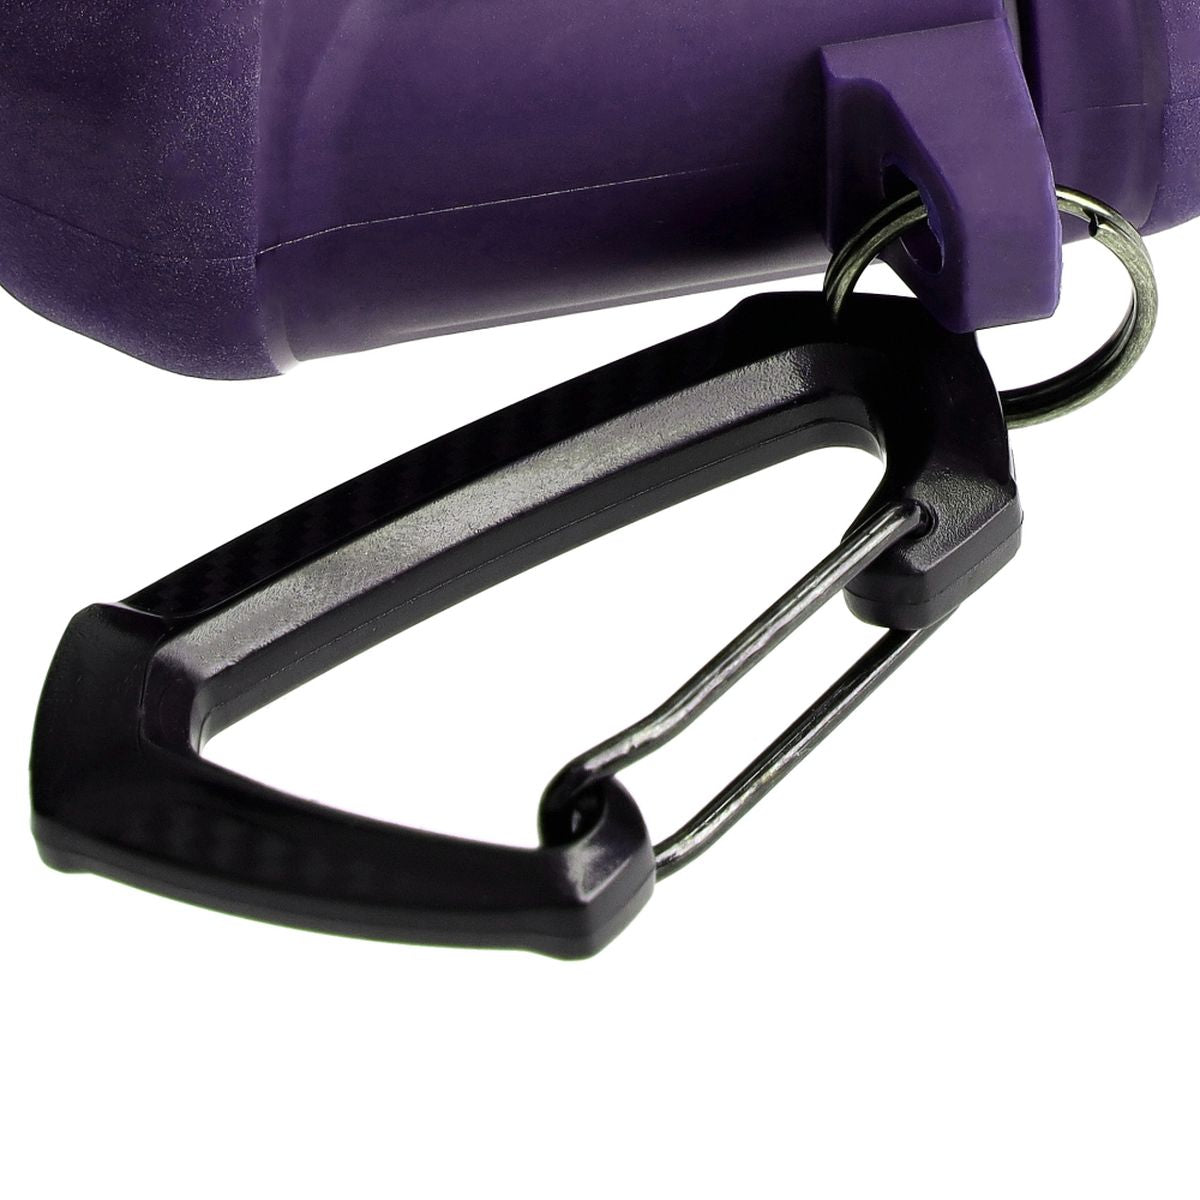 Schutzhülle für Apple Airpods 1/2, Bizon Case Headphone Armor, Violett